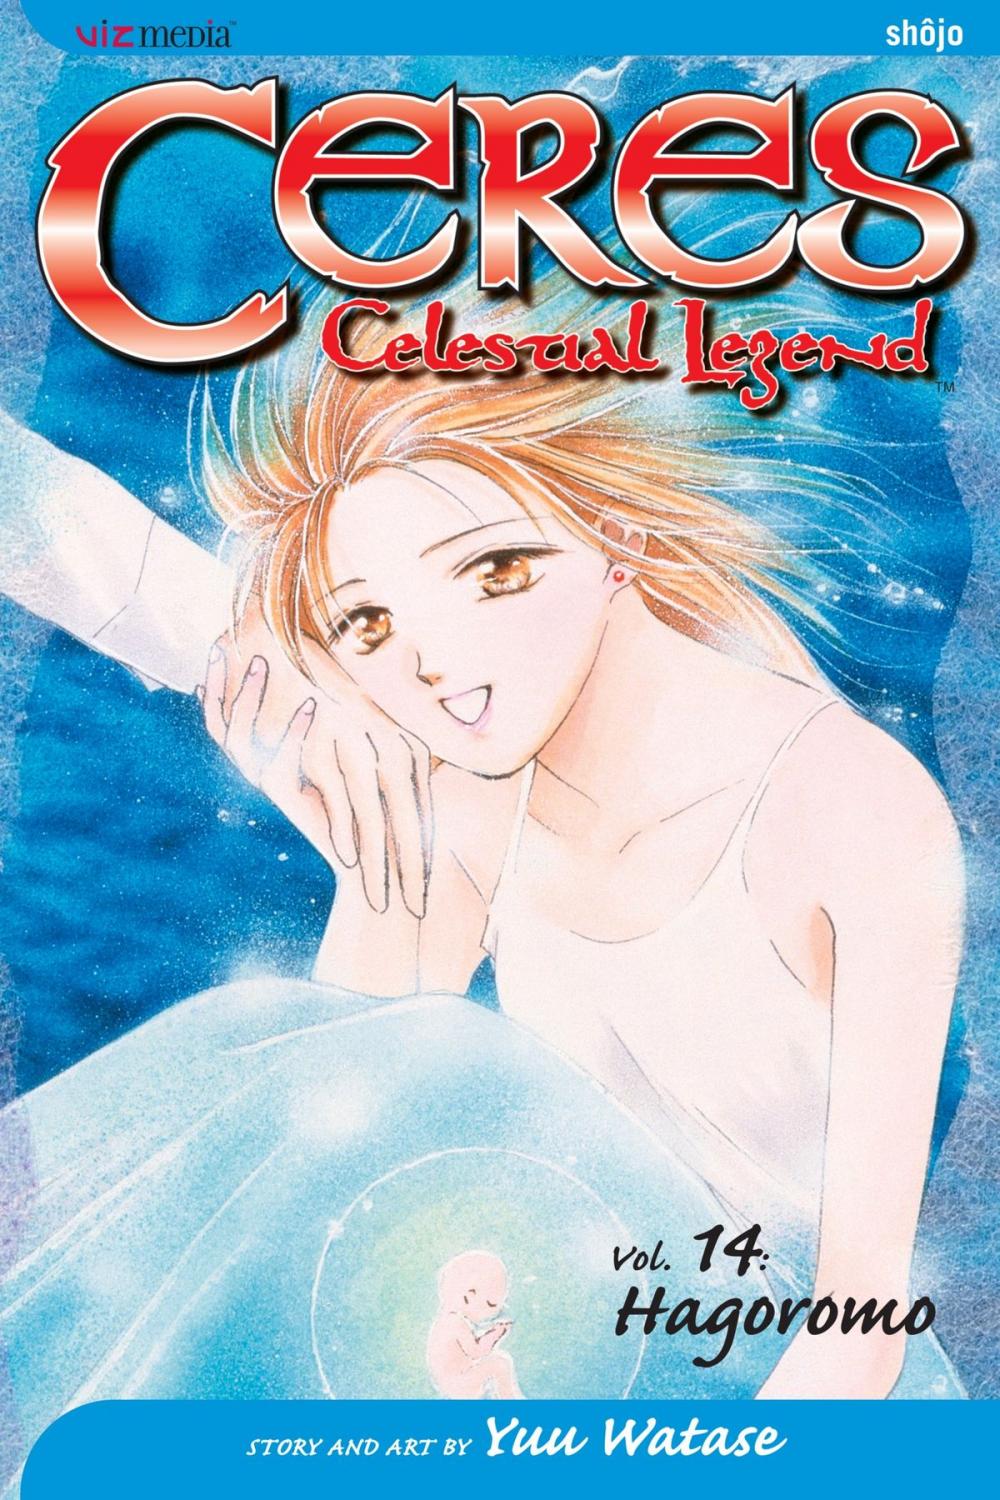 Big bigCover of Ceres: Celestial Legend, Vol. 14